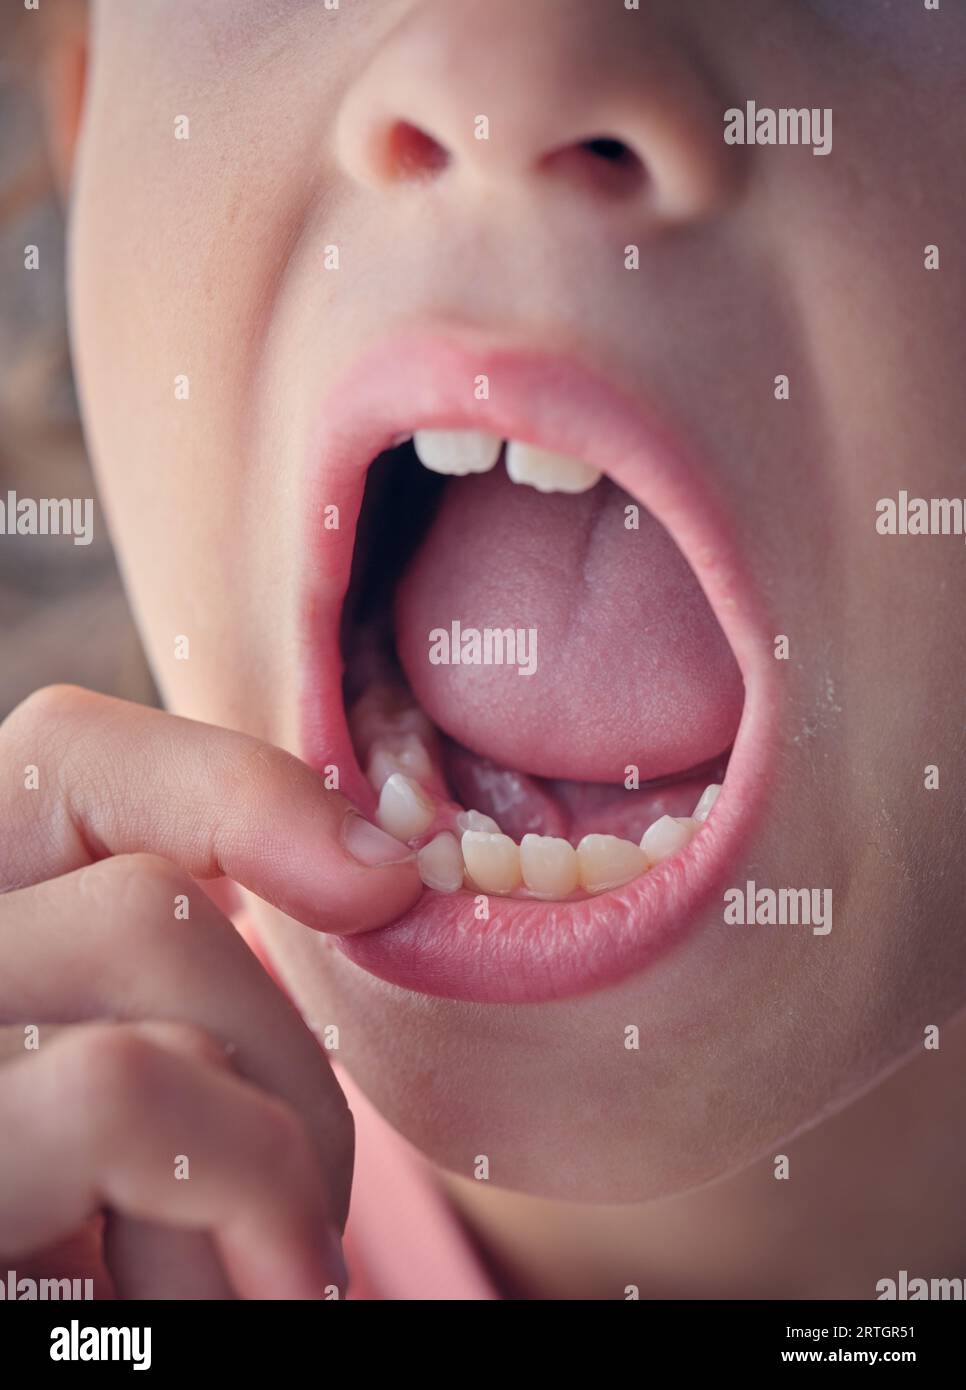 Das Gesicht des Ernteguts nicht erkennbares Kind, das den Mund weit öffnet und den Zahn mit dem Finger im selektiven Fokus berührt Stockfoto